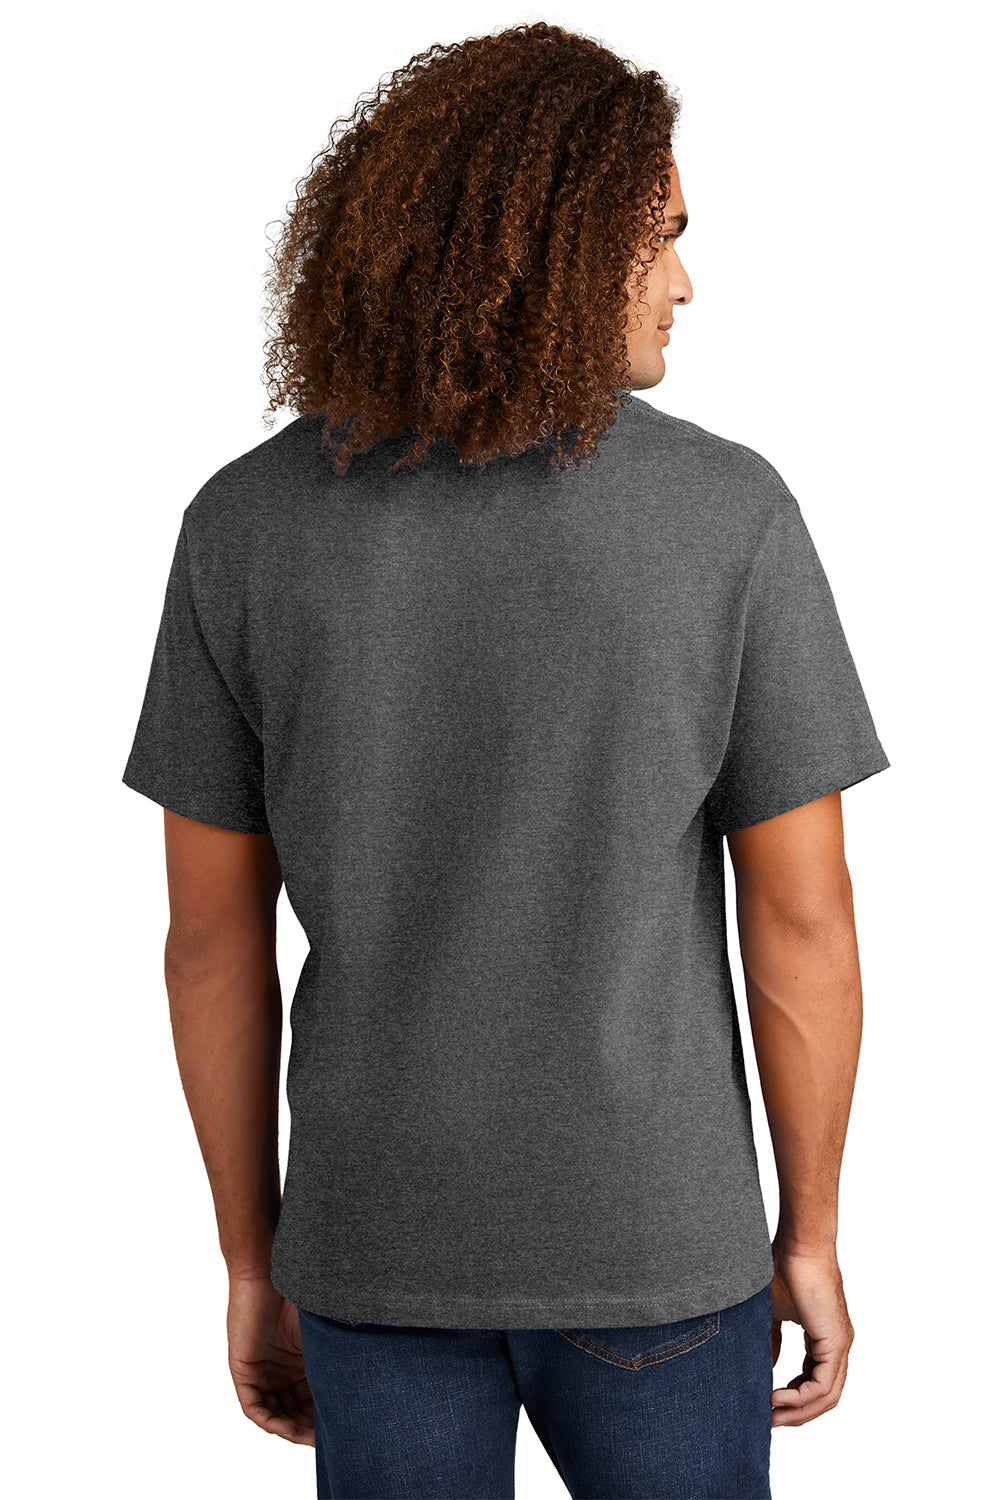 American Apparel 1301/AL1301 Mens Short Sleeve Crewneck T-Shirt Heather Charcoal Grey Model Back